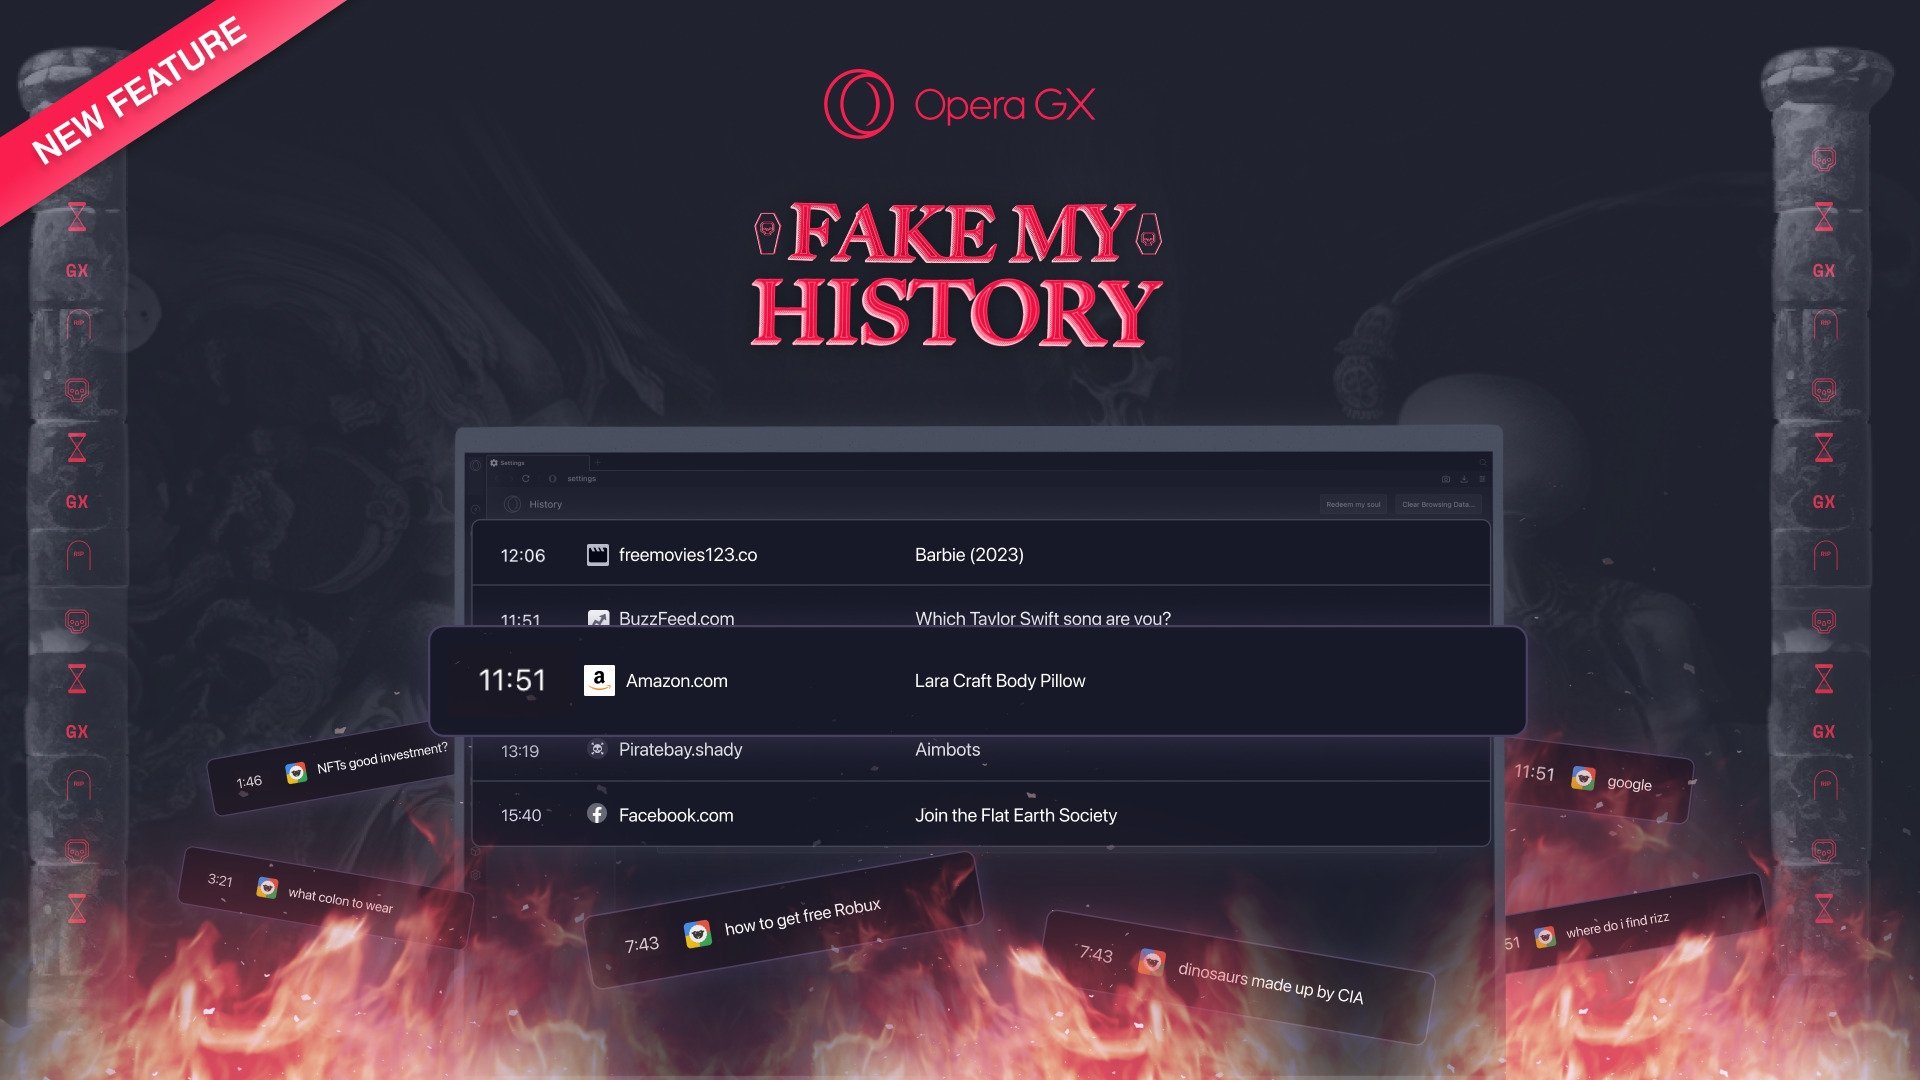 Opera GX Fake My History